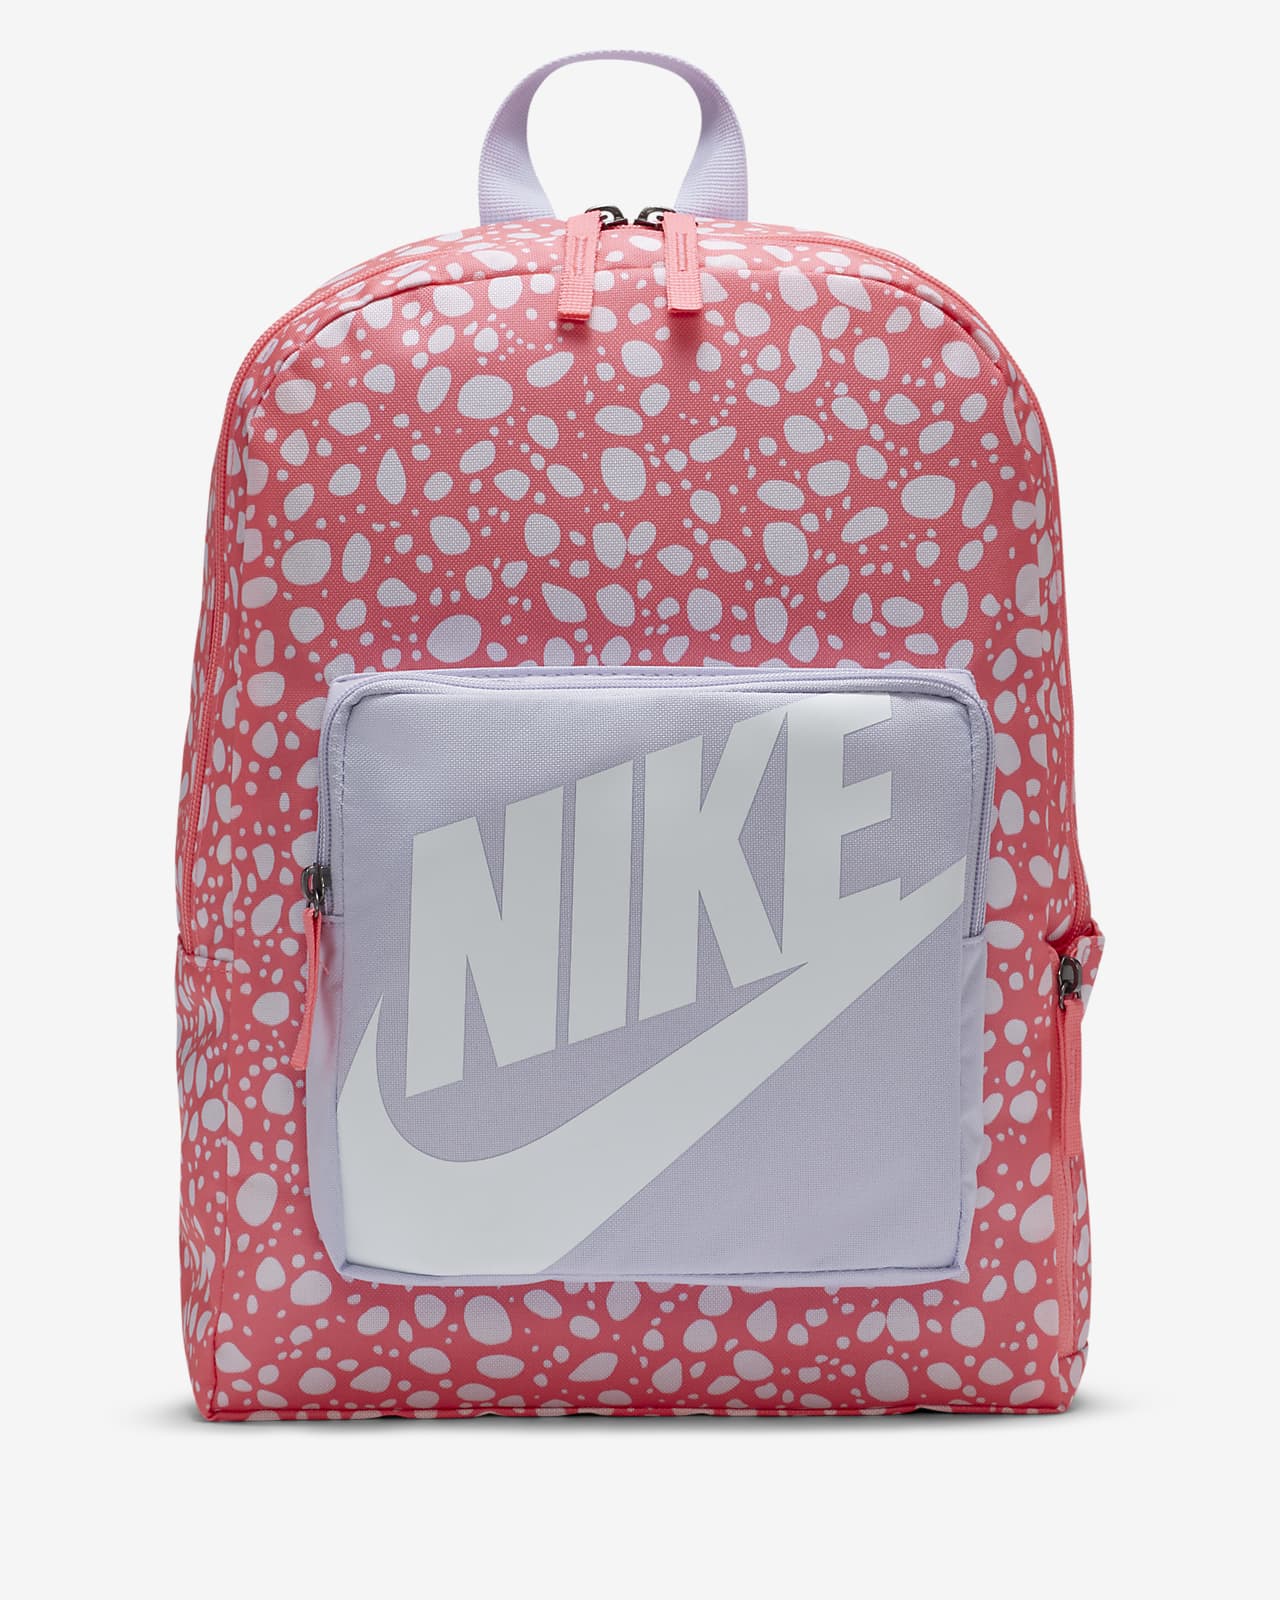 Nike Kids' Printed Backpack.